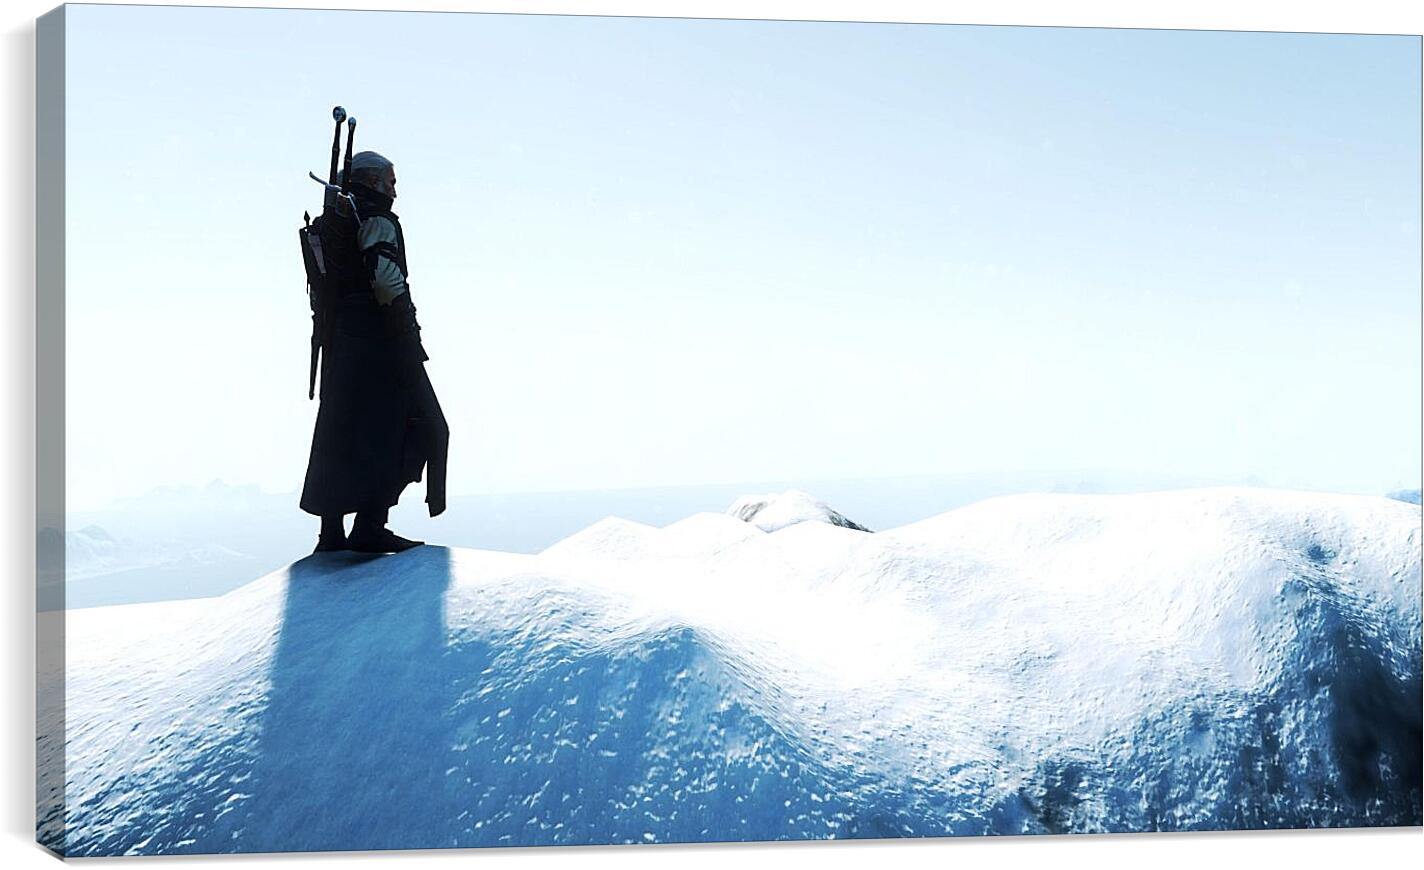 Постер и плакат - The Witcher 3 (Ведьмак), Геральт на снежной вершине